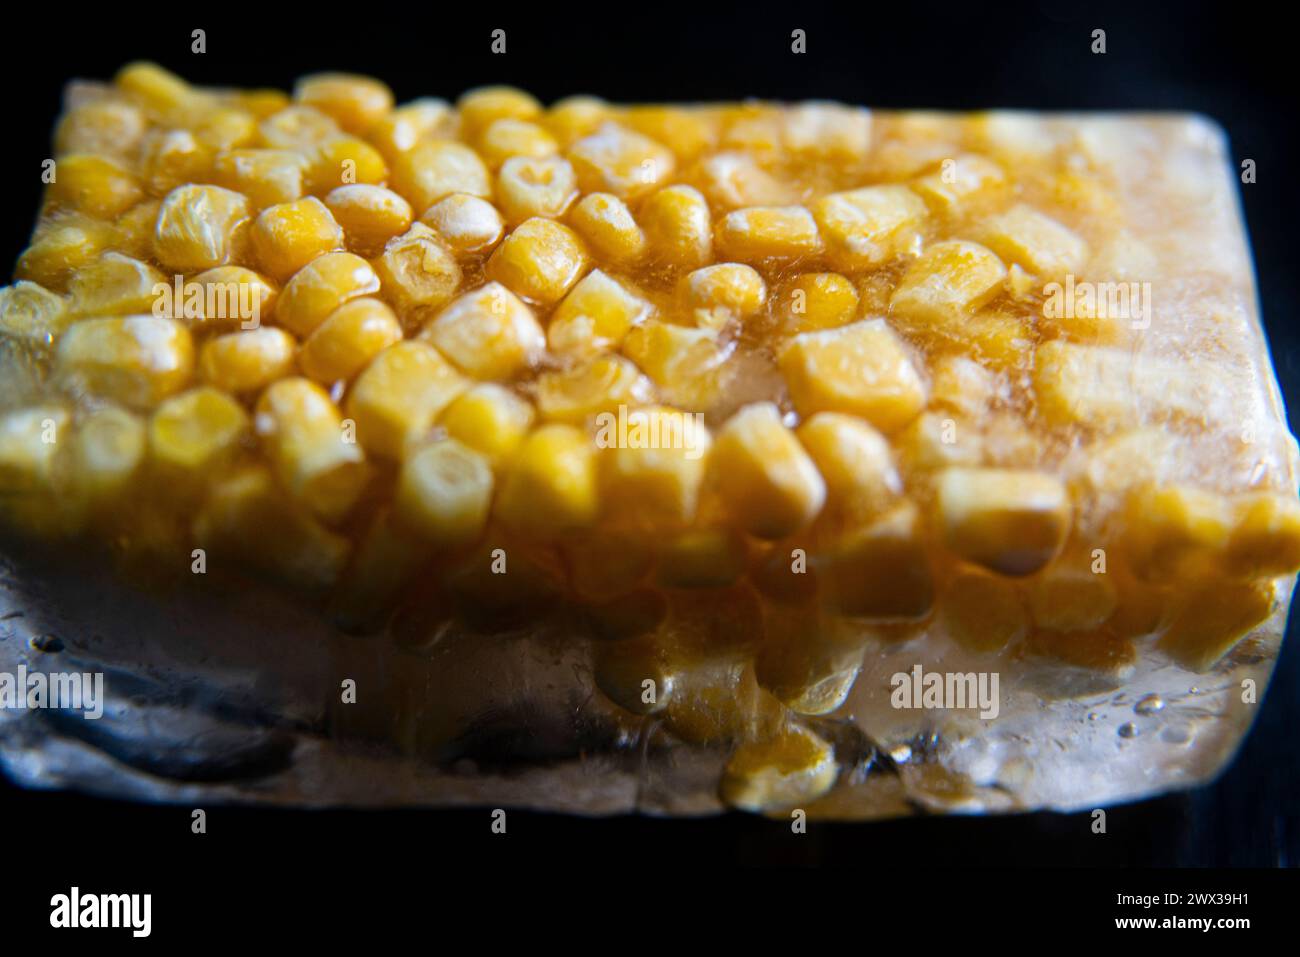 Una macro fotografia ravvicinata di chicchi di mais dolce gialli congelati in un blocco di ghiaccio su uno sfondo scuro. Foto Stock